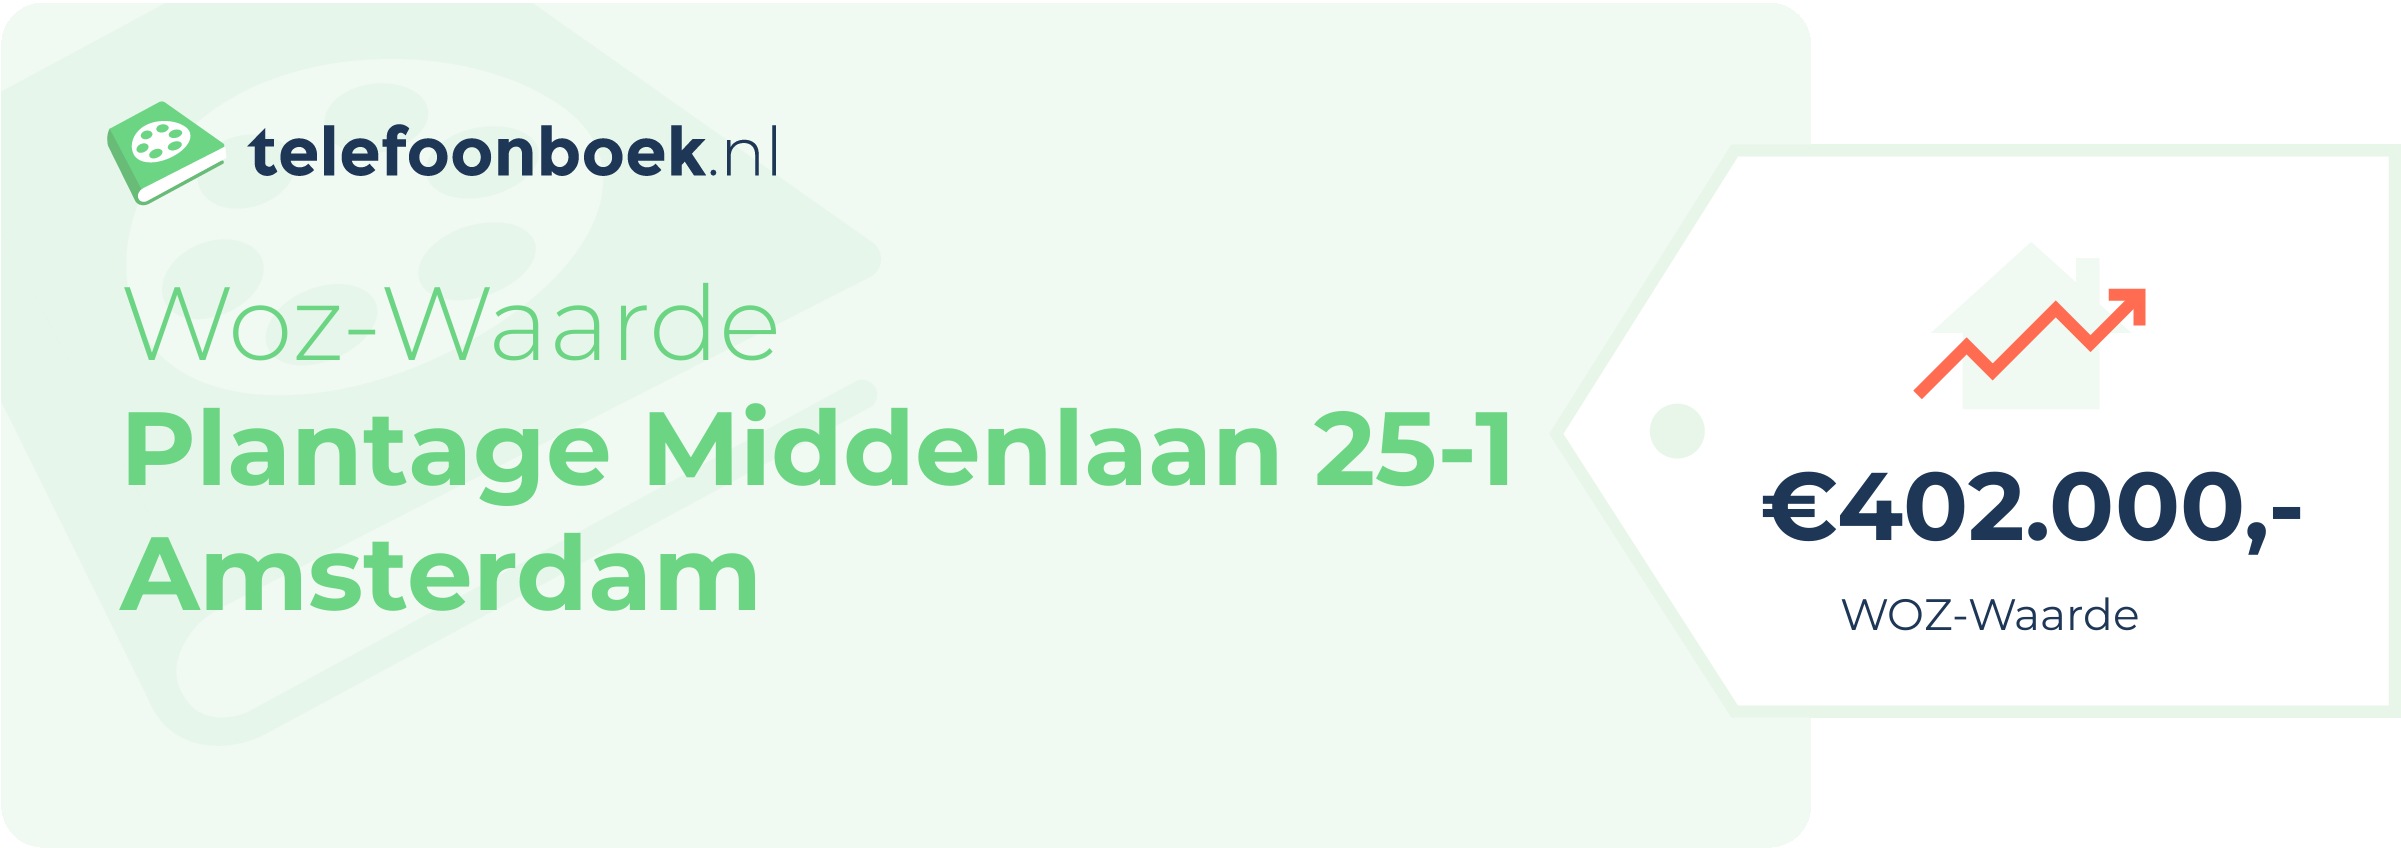 WOZ-waarde Plantage Middenlaan 25-1 Amsterdam